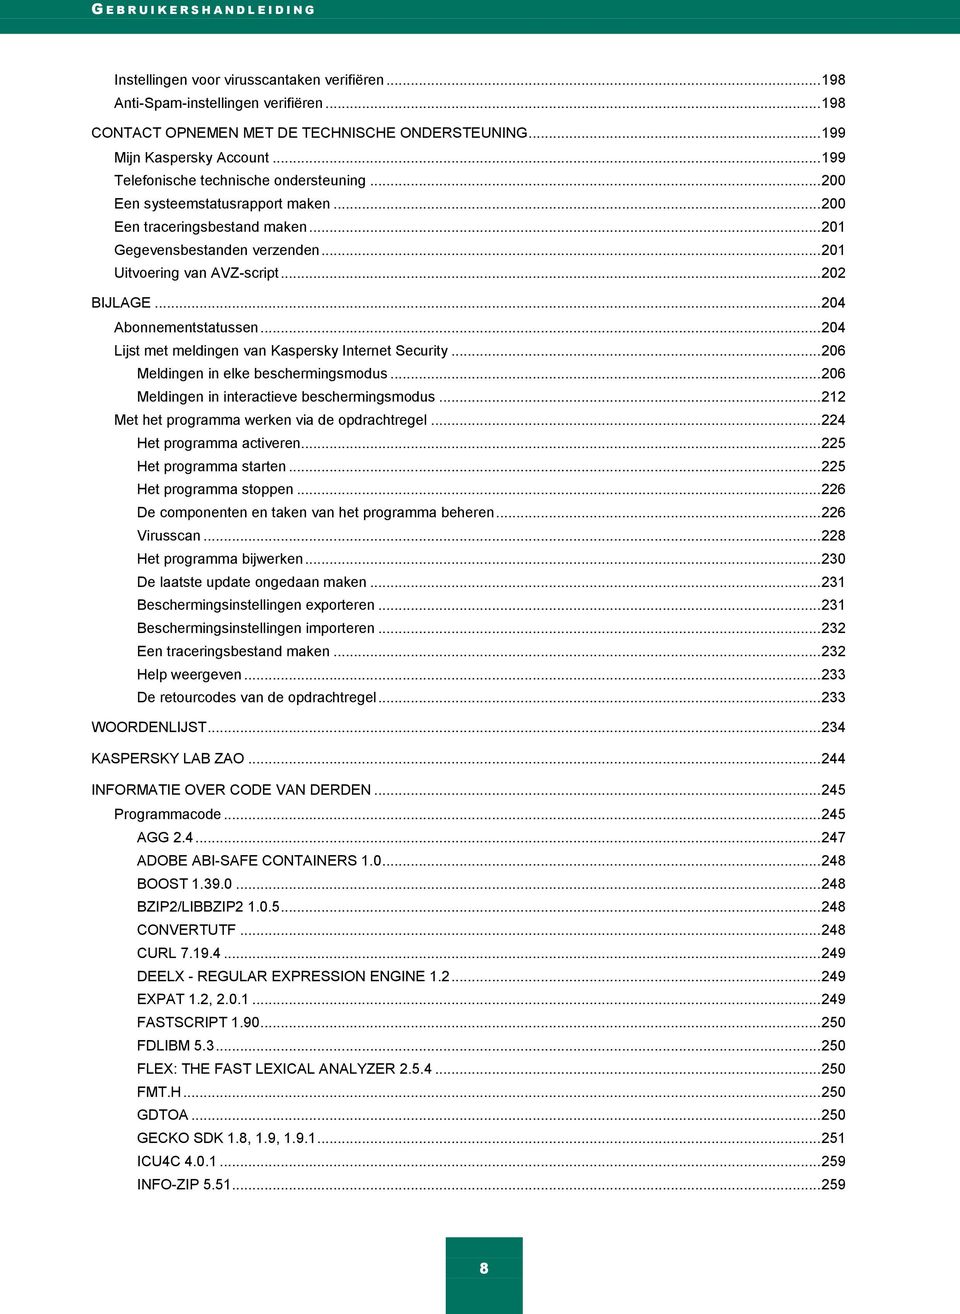 .. 201 Uitvoering van AVZ-script... 202 BIJLAGE... 204 Abonnementstatussen... 204 Lijst met meldingen van Kaspersky Internet Security... 206 Meldingen in elke beschermingsmodus.